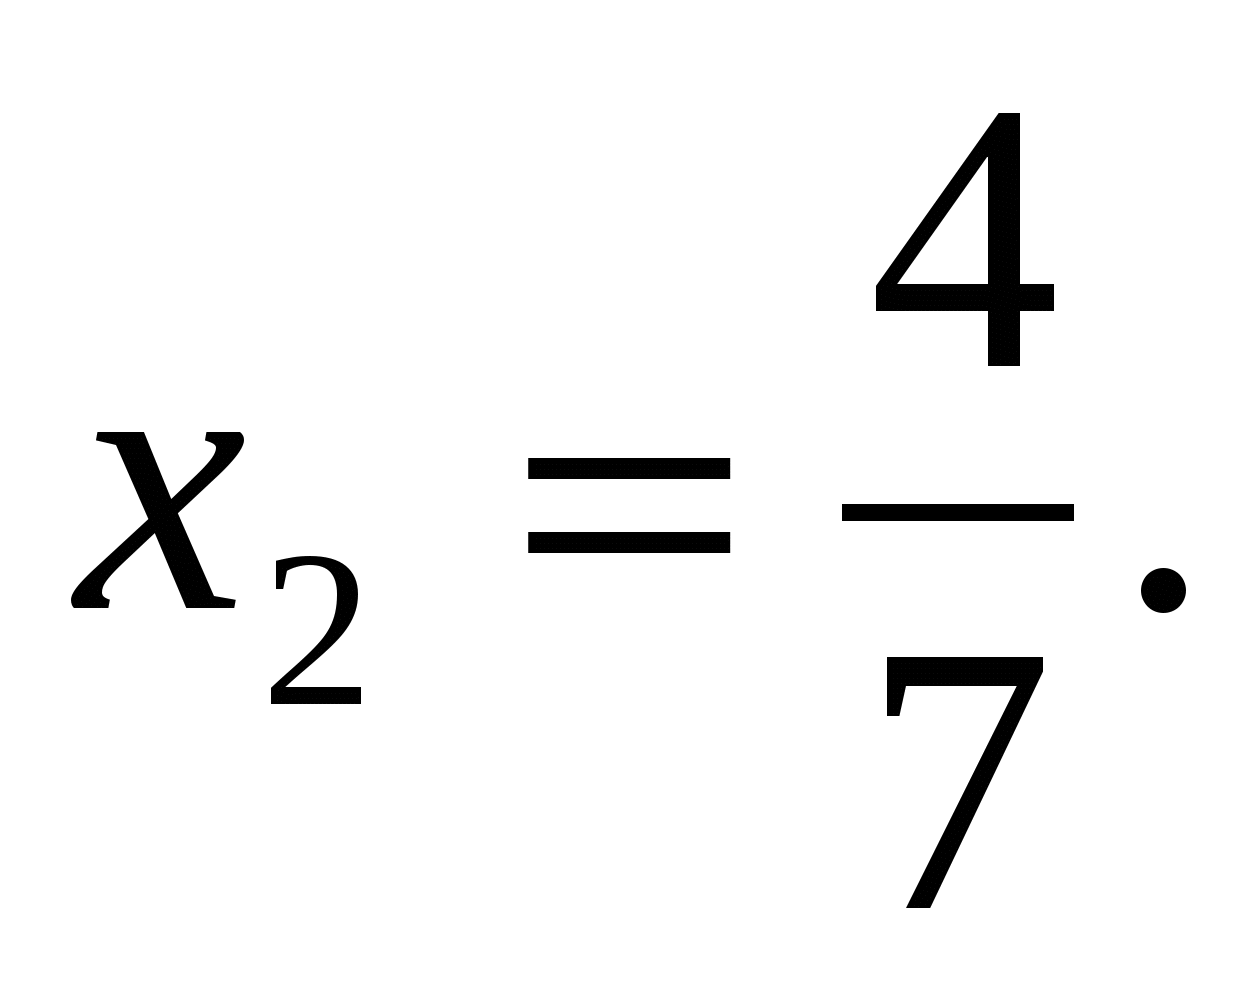 Урок «Решение квадратных уравнений»